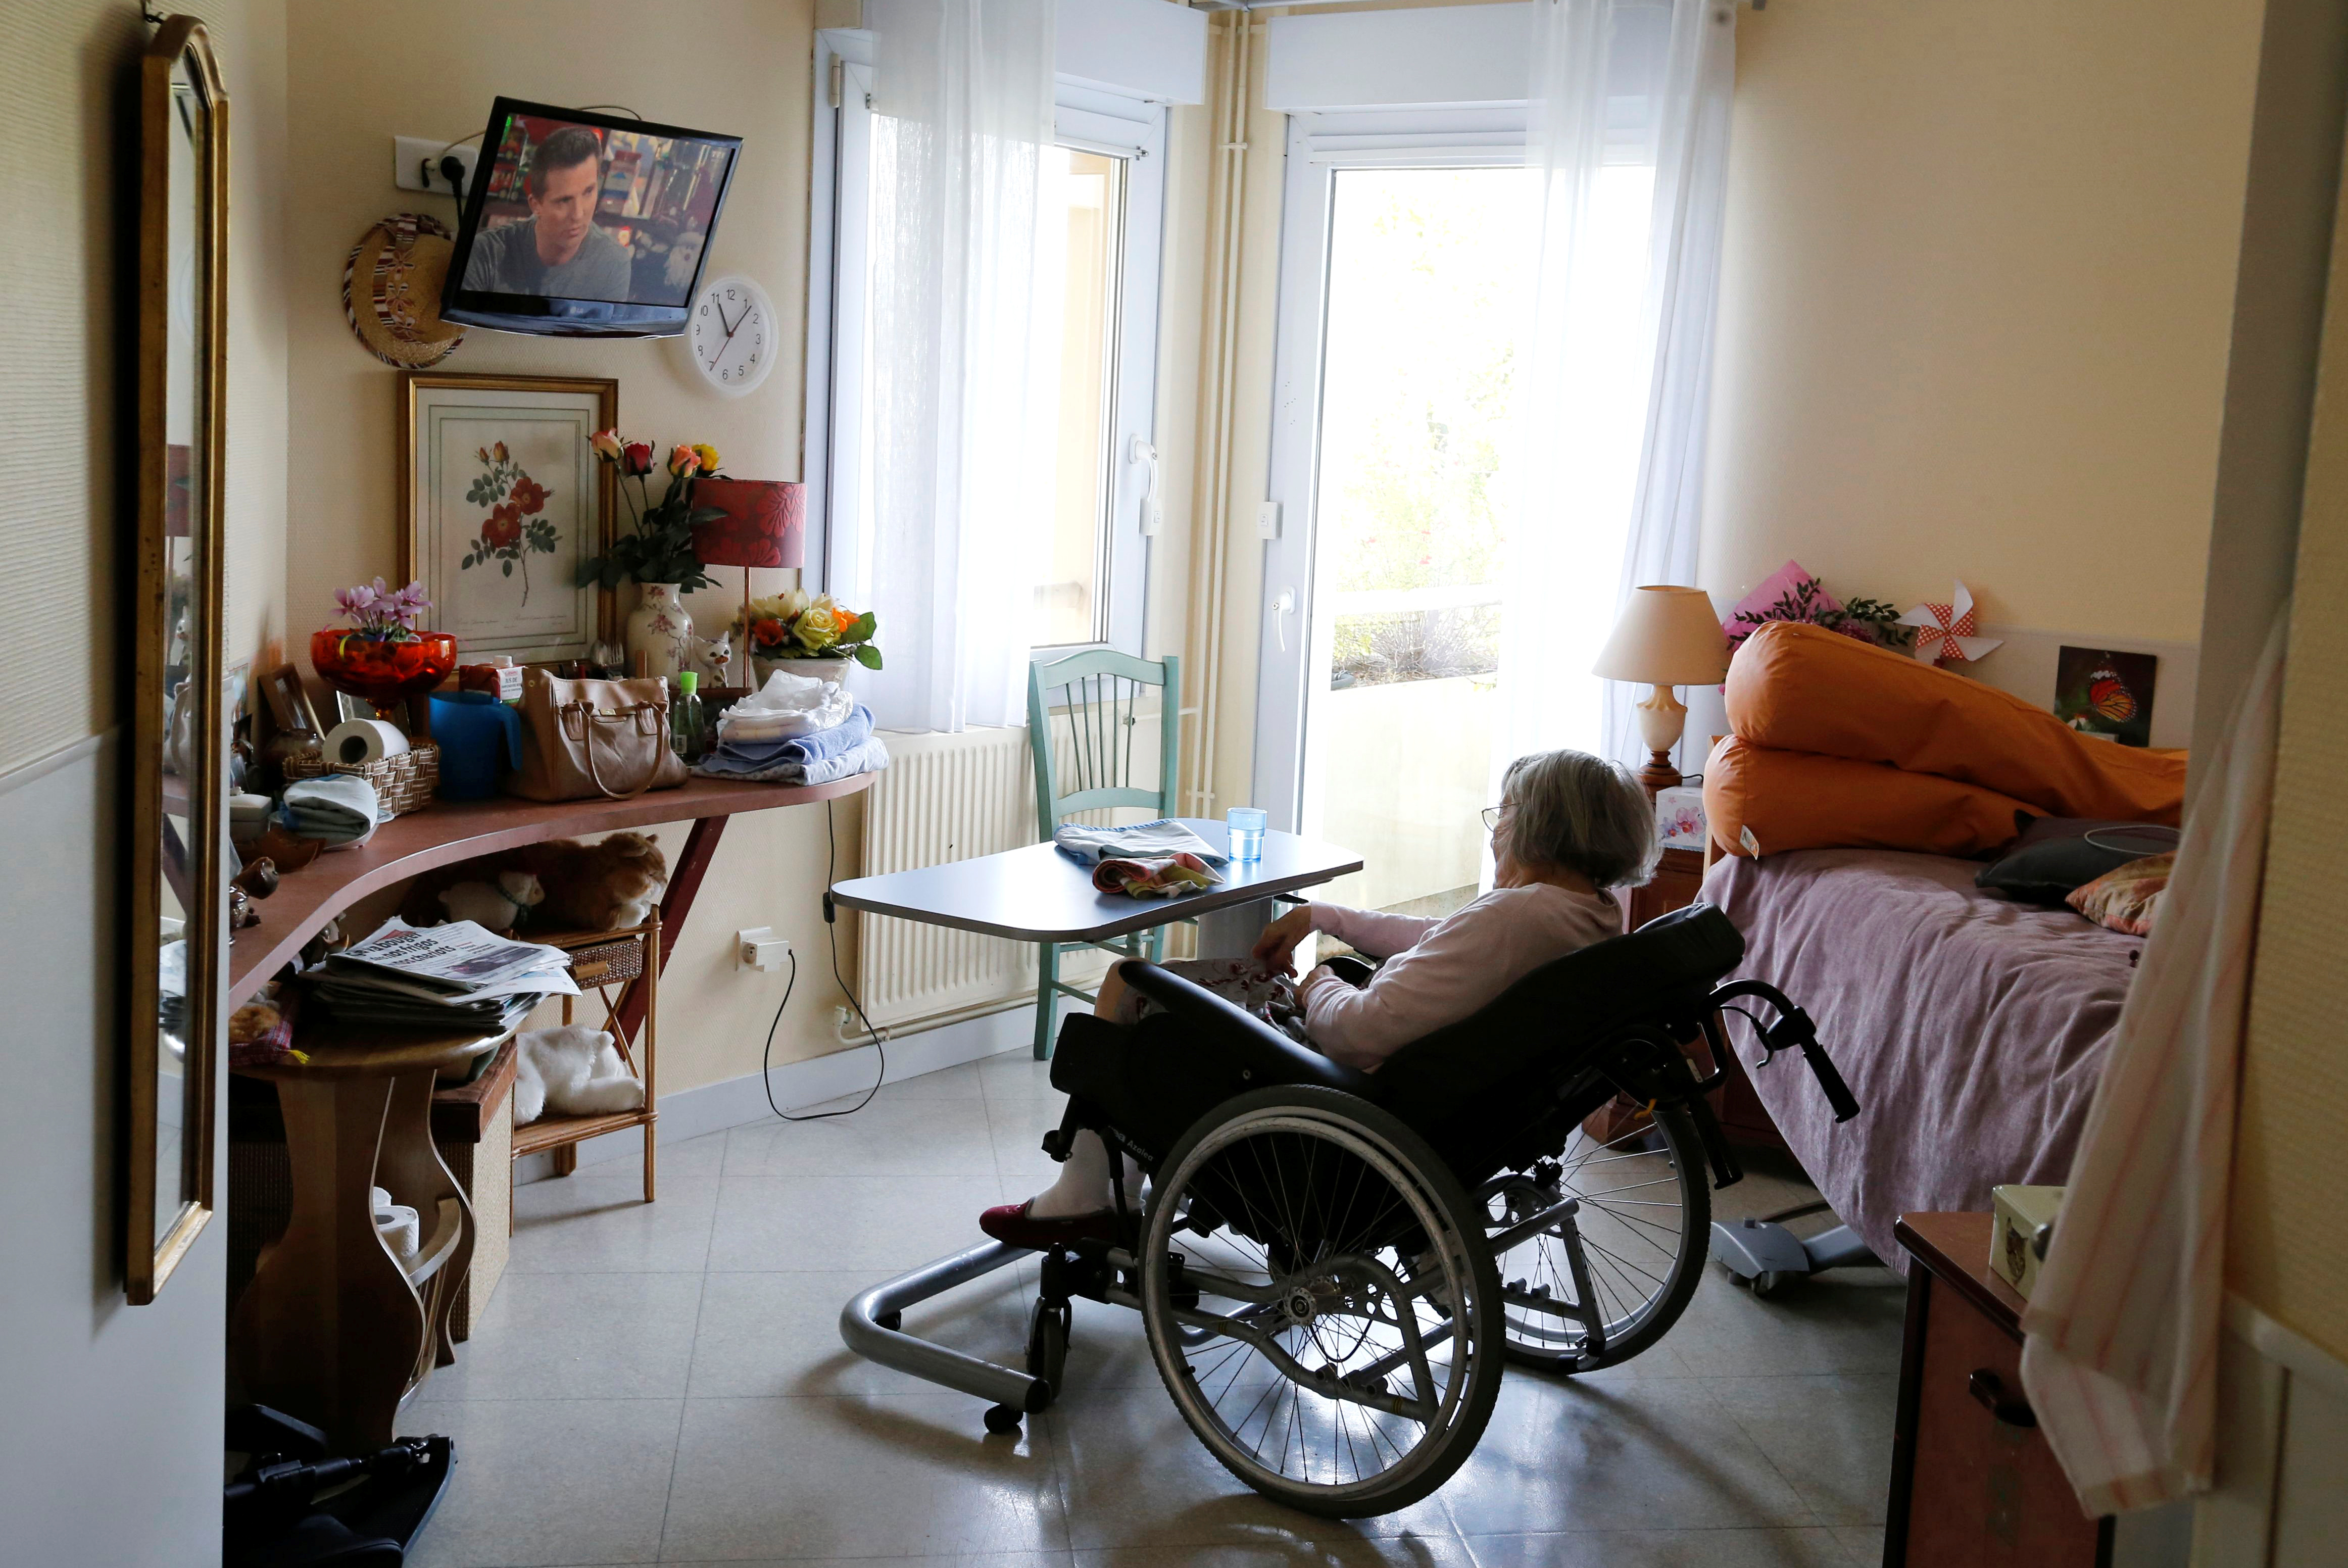 Aides à domicile: le Sénat adopte un tarif plancher à 22 euros l'heure